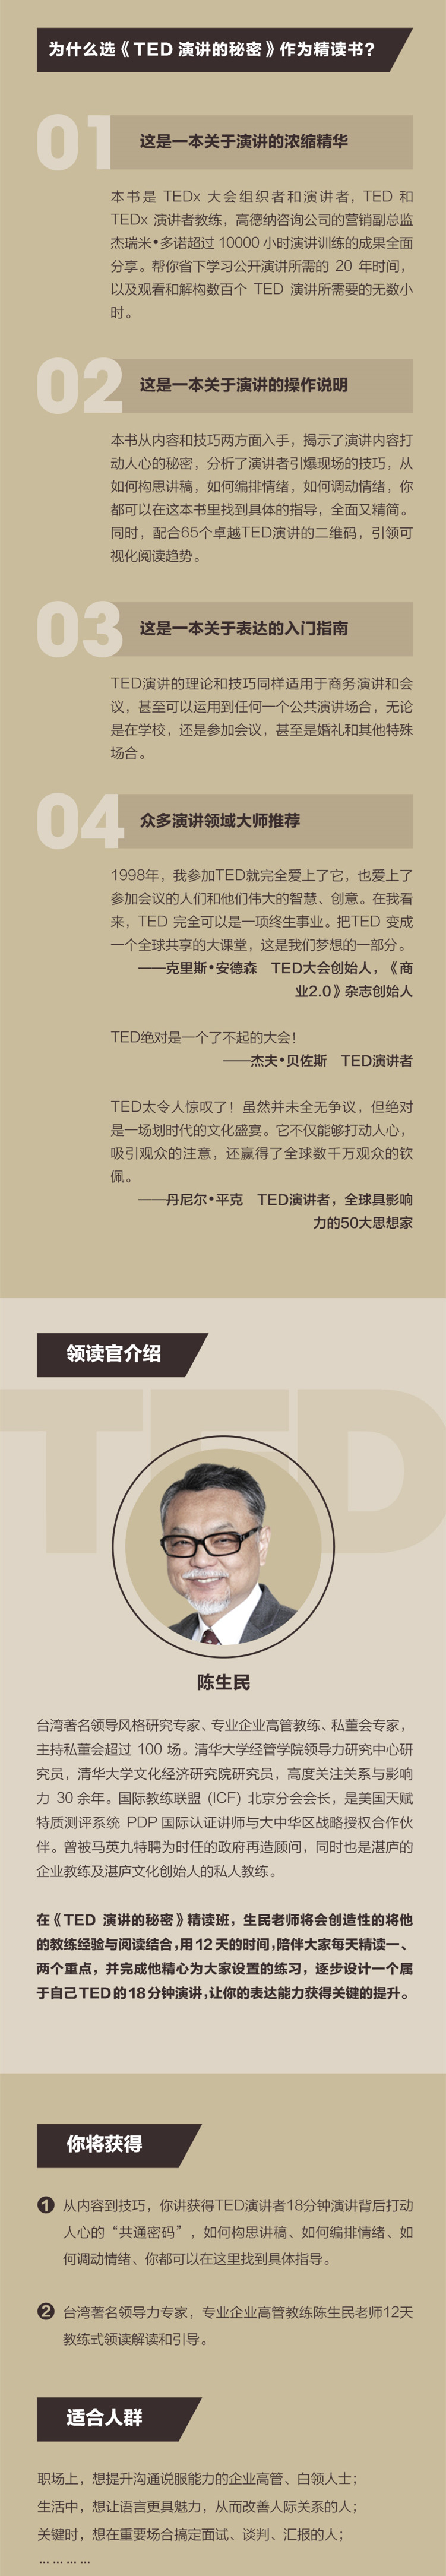 陈生民·《TED演讲的秘密》精读班,12天提升表达能力-1